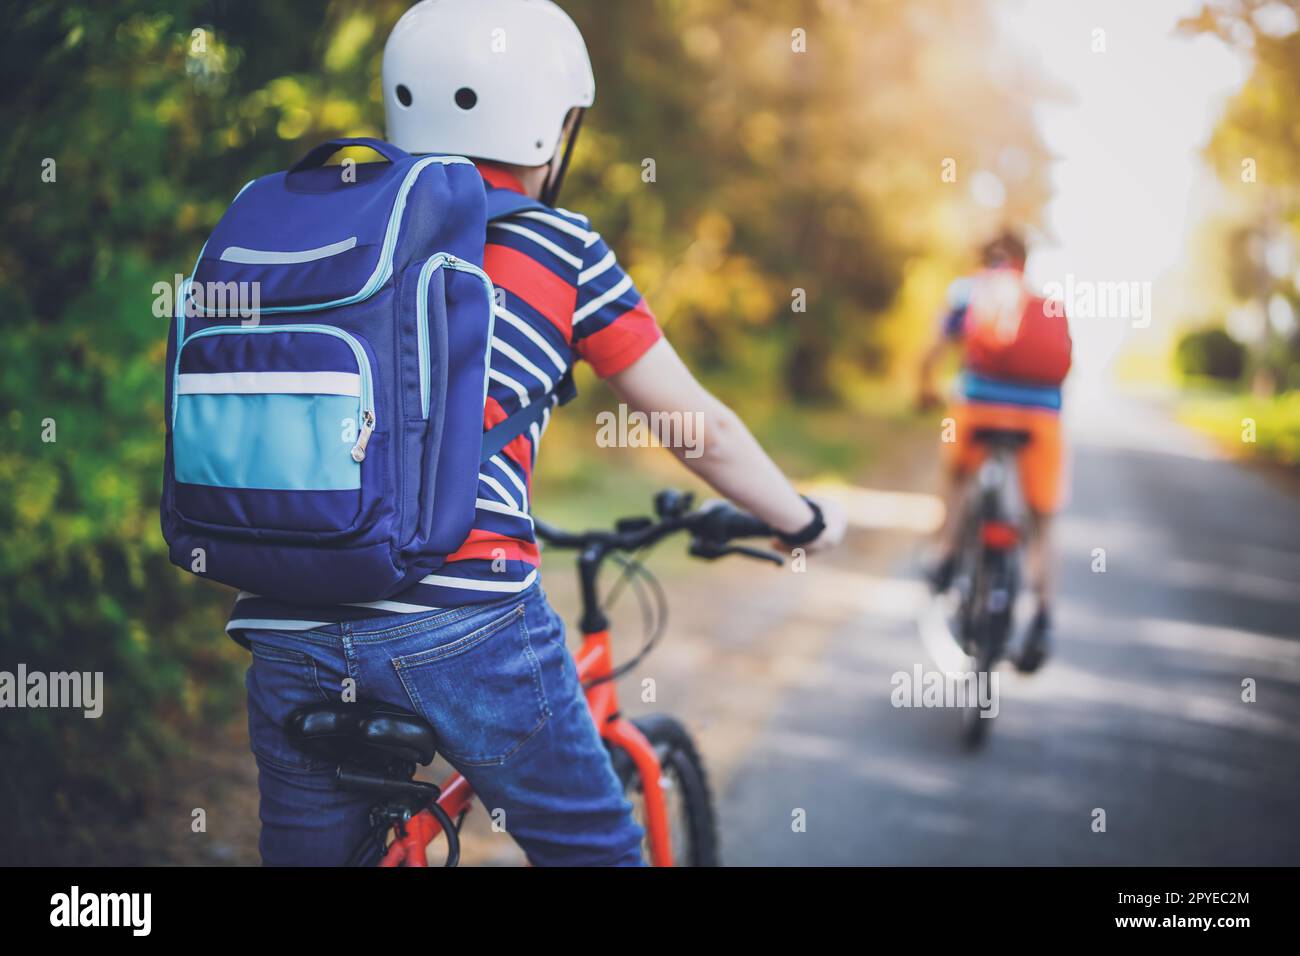 2 Años Del Montar a Caballo Del Niño En Su Primera Bici Foto de archivo -  Imagen de ciclismo, juego: 29090380